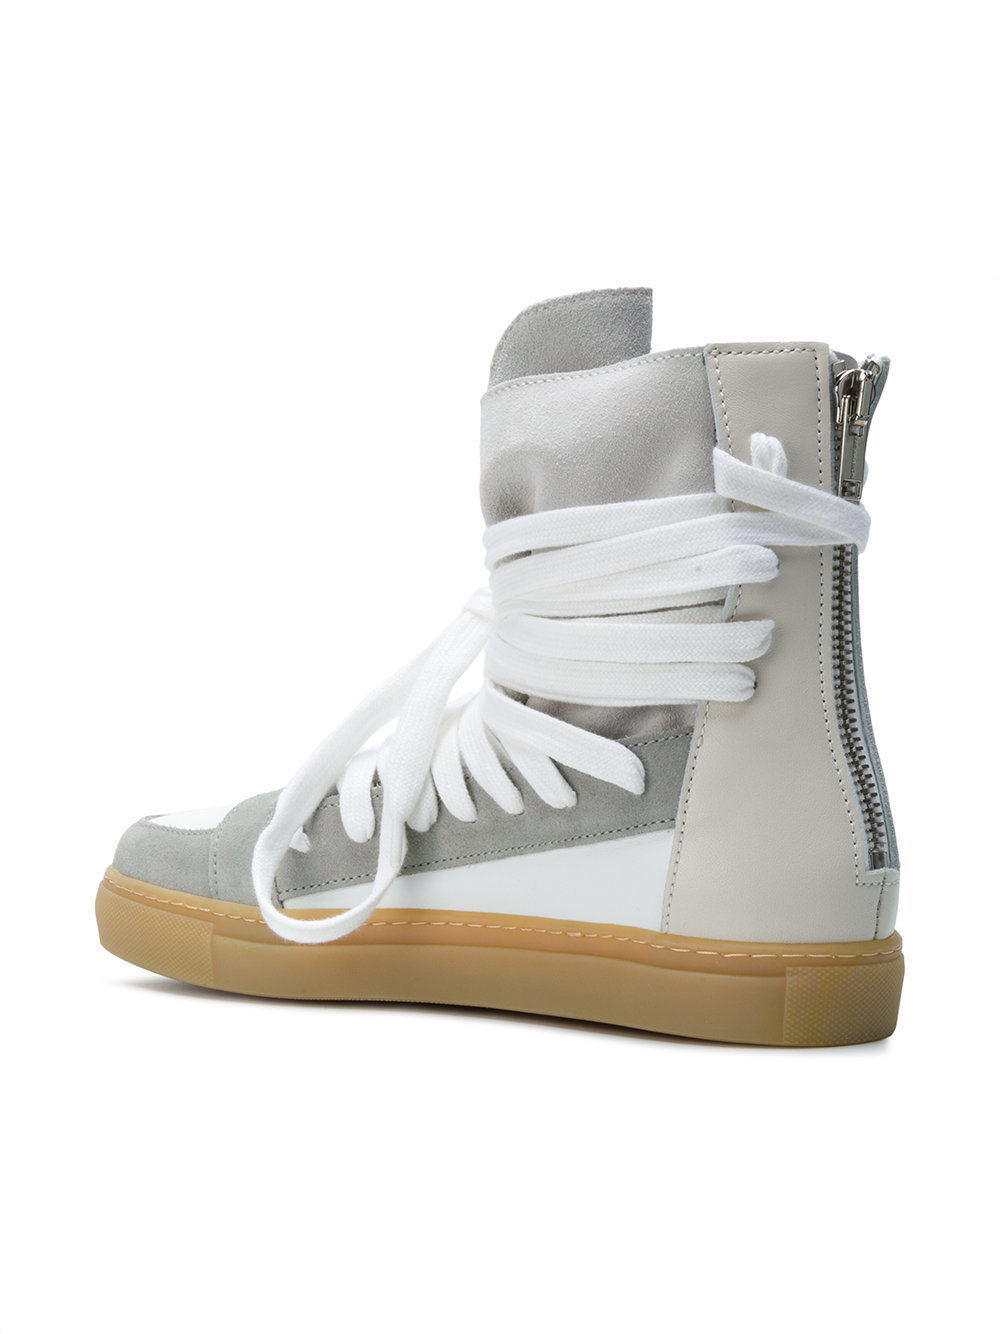 Kris Van Assche Lace Up Hi Top Sneakers, $562 | farfetch.com | Lookastic